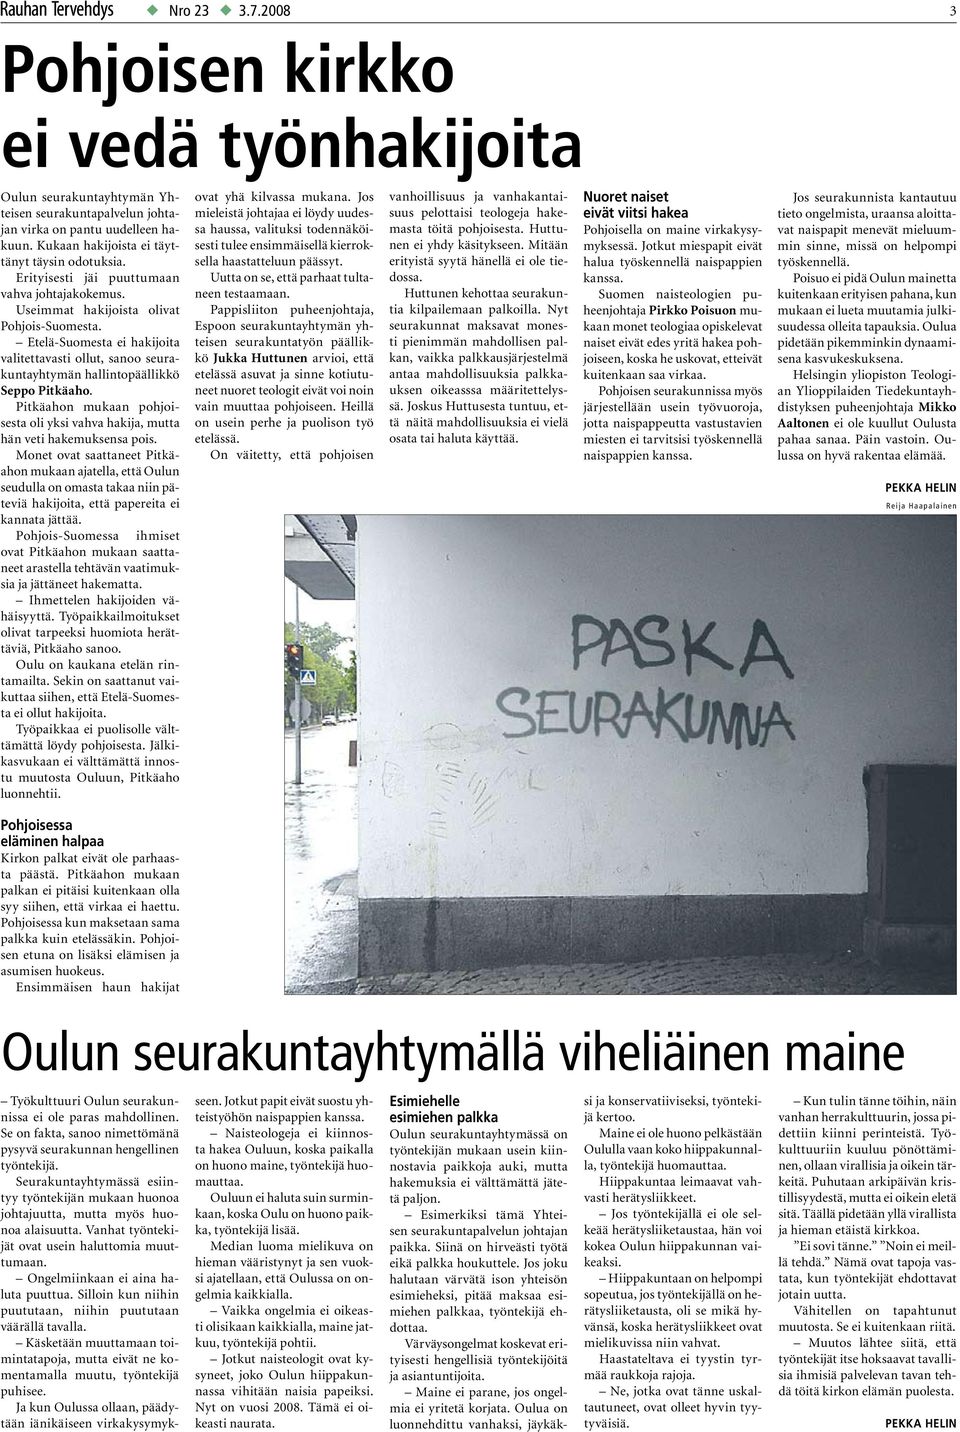 Etelä-Suomesta ei hakijoita valitettavasti ollut, sanoo seurakuntayhtymän hallintopäällikkö Seppo Pitkäaho. Pitkäahon mukaan pohjoisesta oli yksi vahva hakija, mutta hän veti hakemuksensa pois.